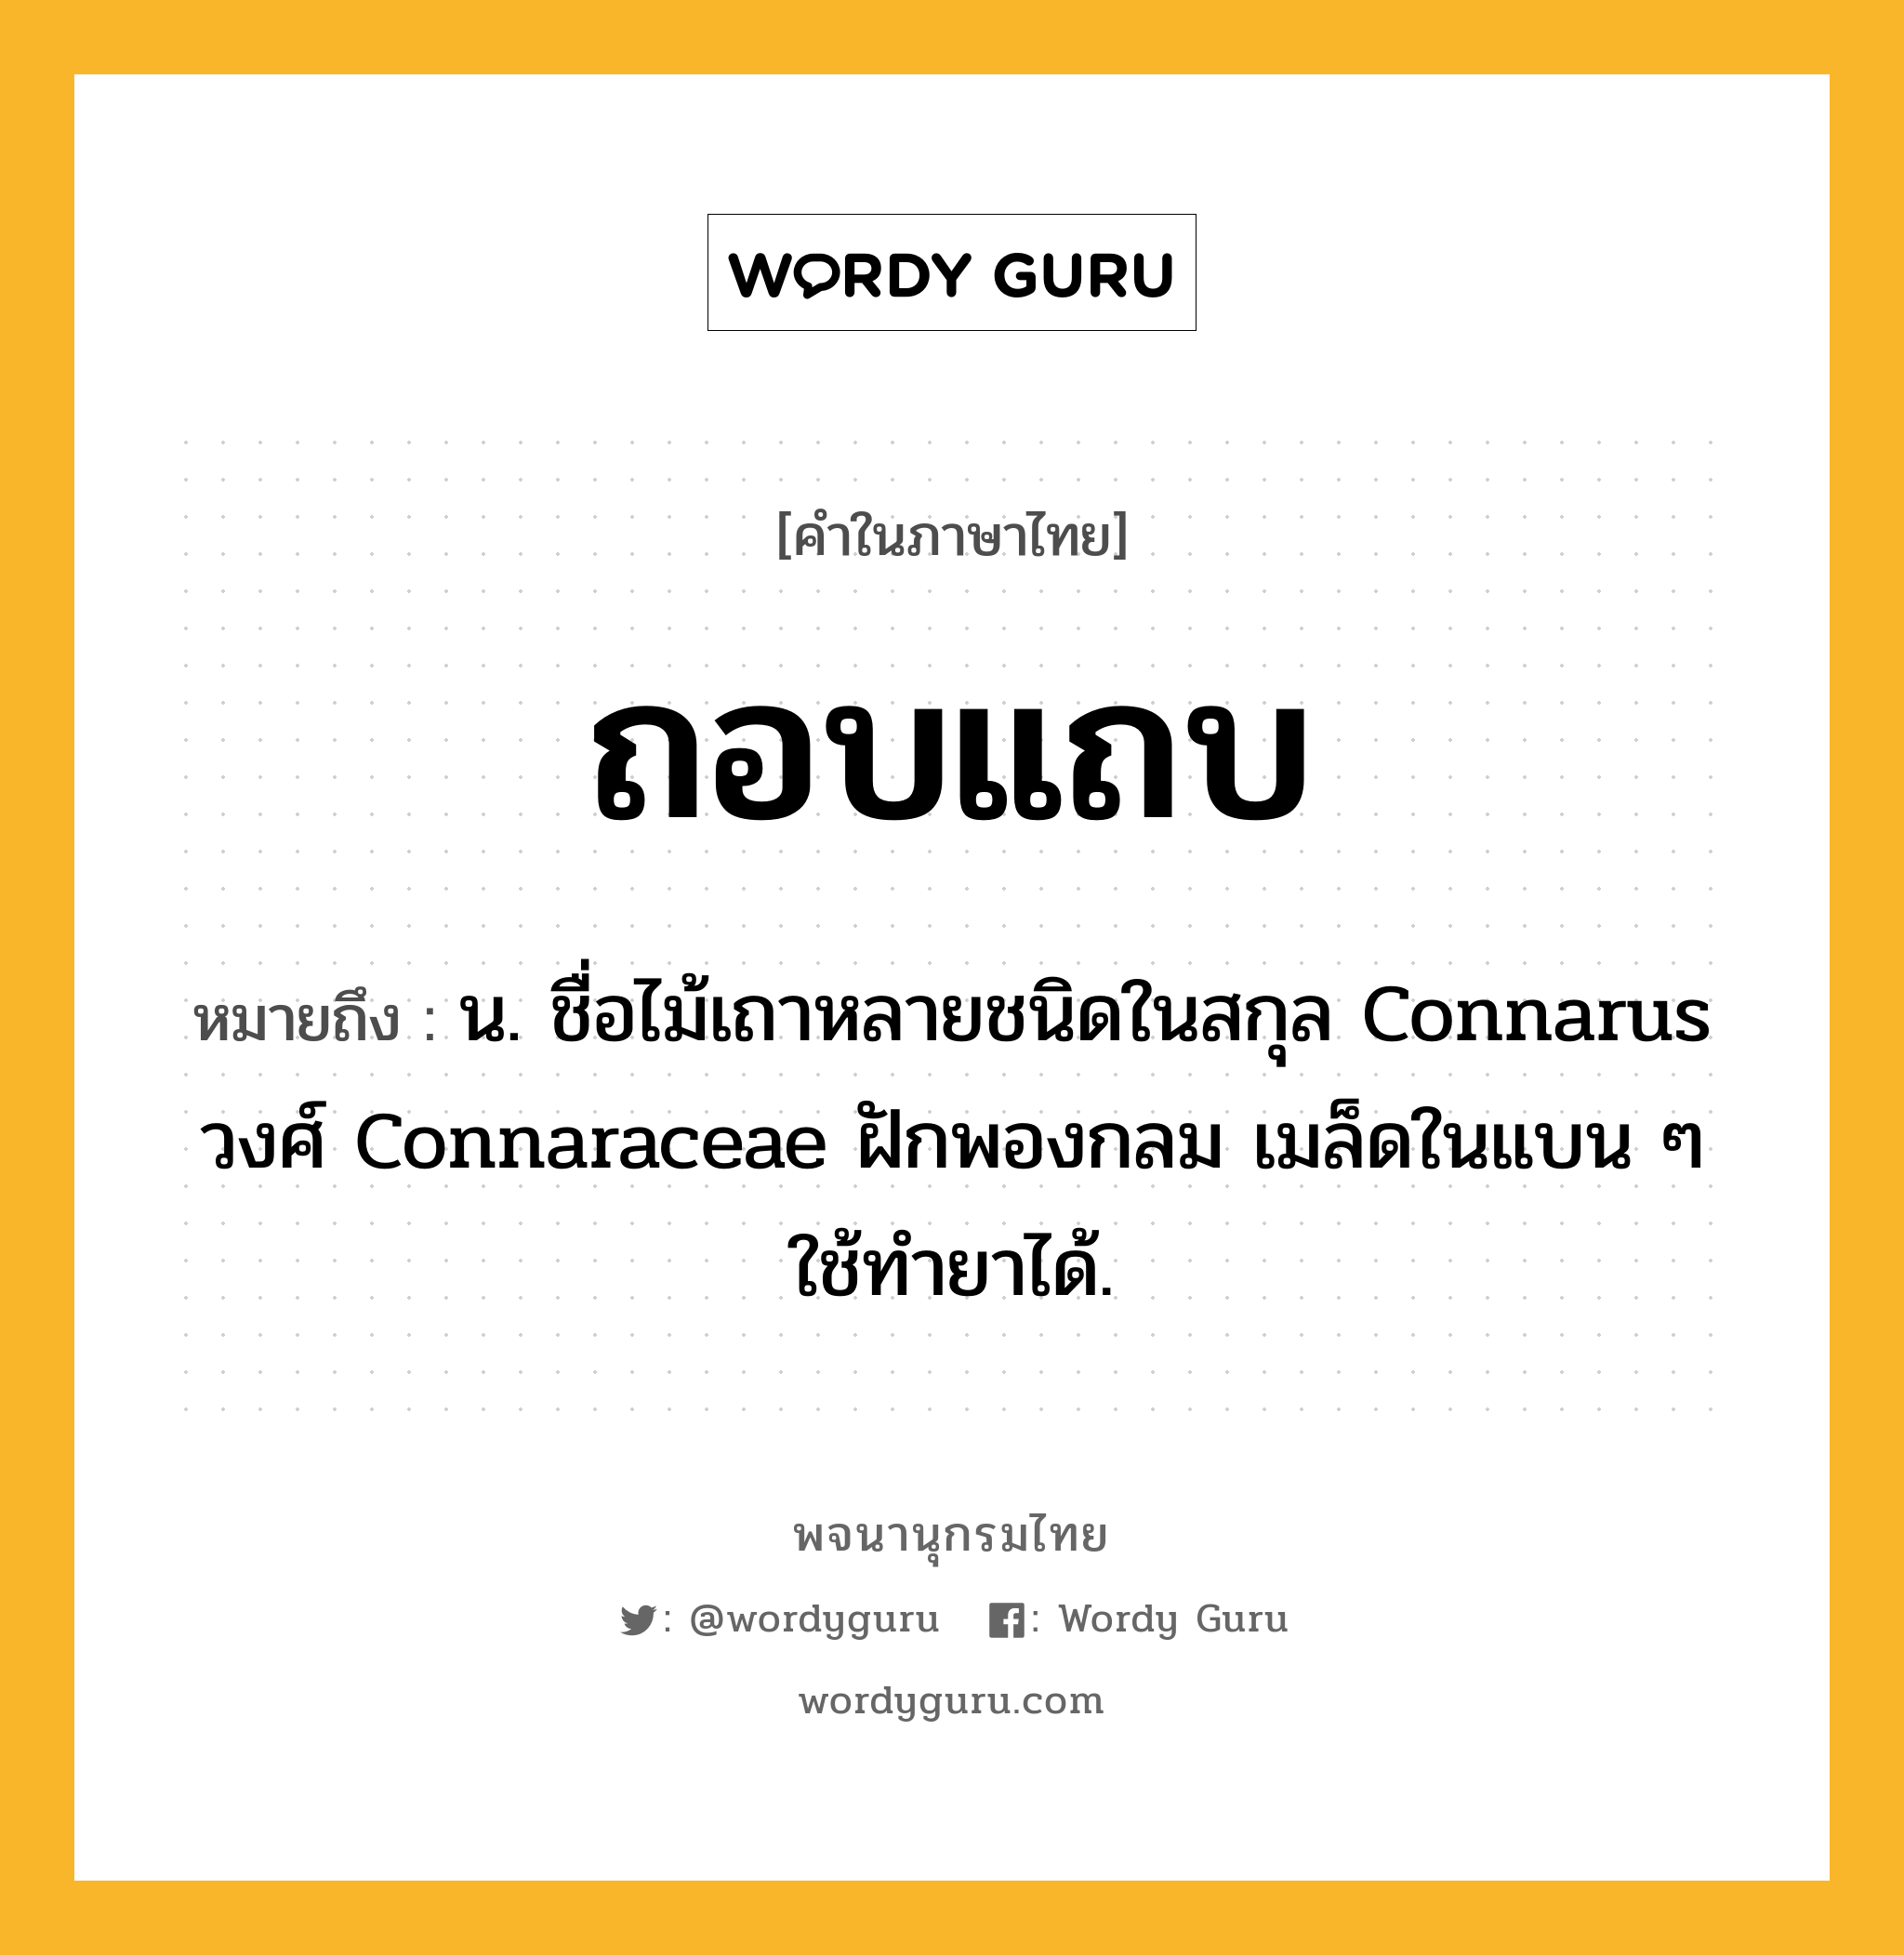 ถอบแถบ หมายถึงอะไร?, คำในภาษาไทย ถอบแถบ หมายถึง น. ชื่อไม้เถาหลายชนิดในสกุล Connarus วงศ์ Connaraceae ฝักพองกลม เมล็ดในแบน ๆ ใช้ทํายาได้.